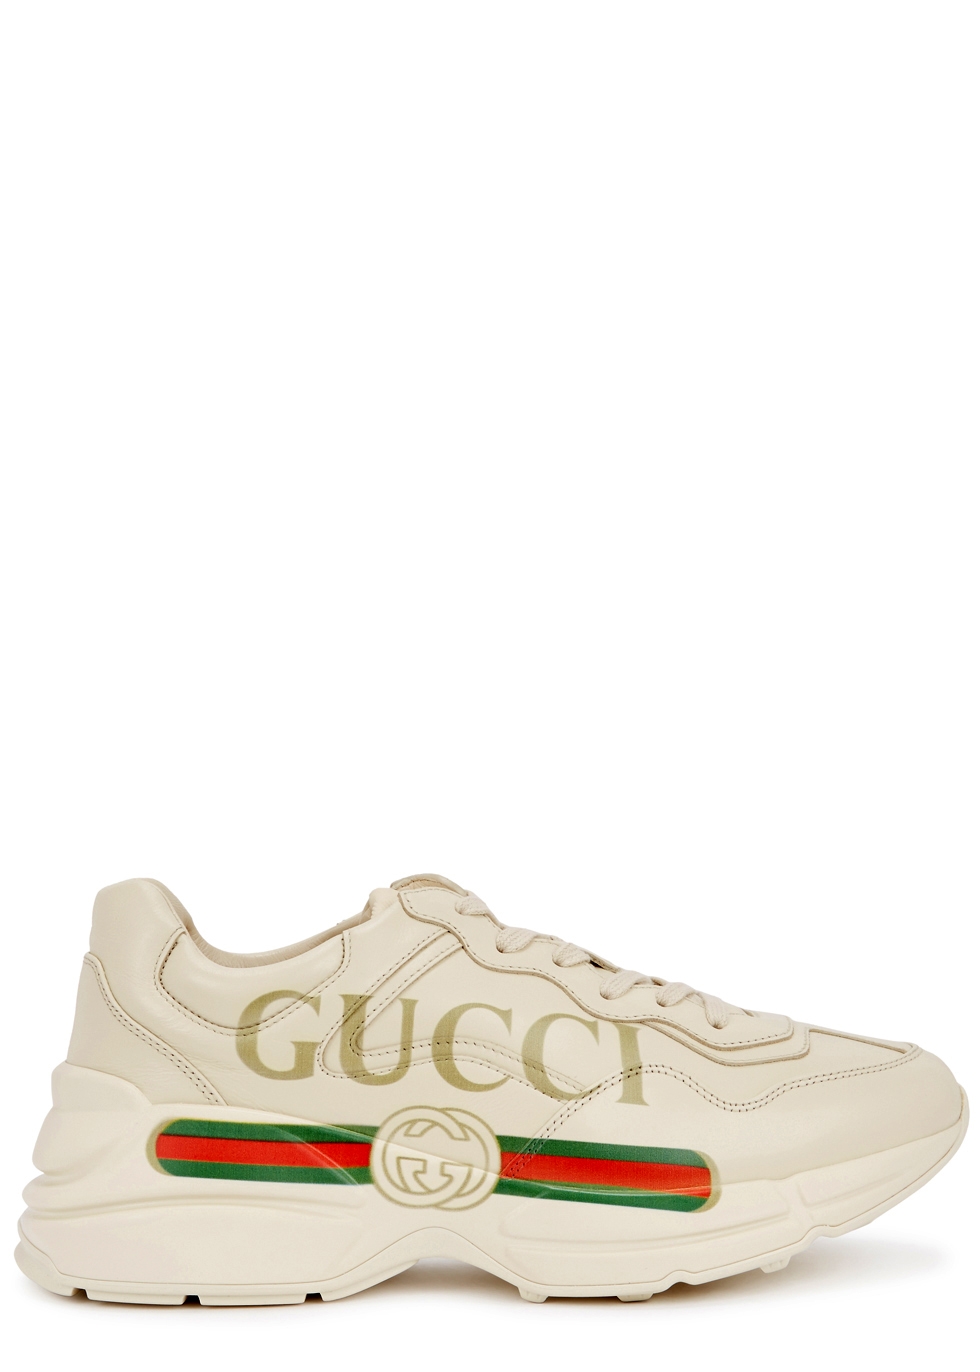 Gucci Rhyton logo-print leather 